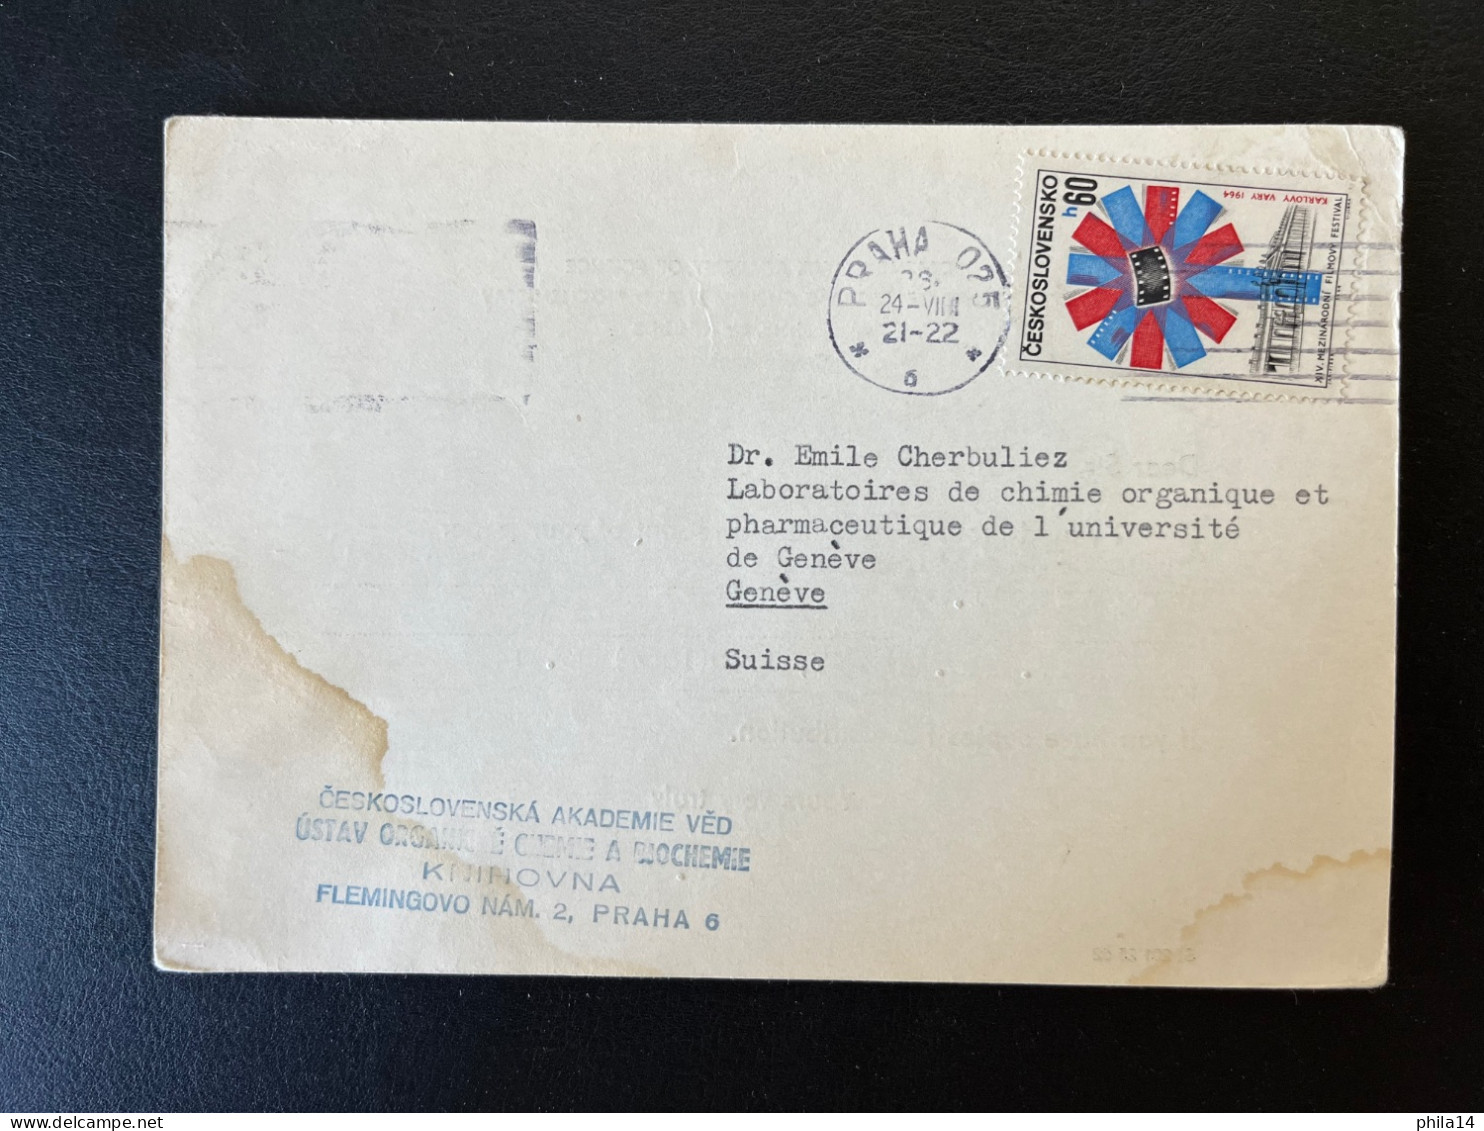 CARTE TCHECOSLOVAQUIE / PRAGUE PRAHA POUR GENEVE SUISSE 1964 / CZECHOSLOVAK ACADEMY OF SCIENCE - Brieven En Documenten